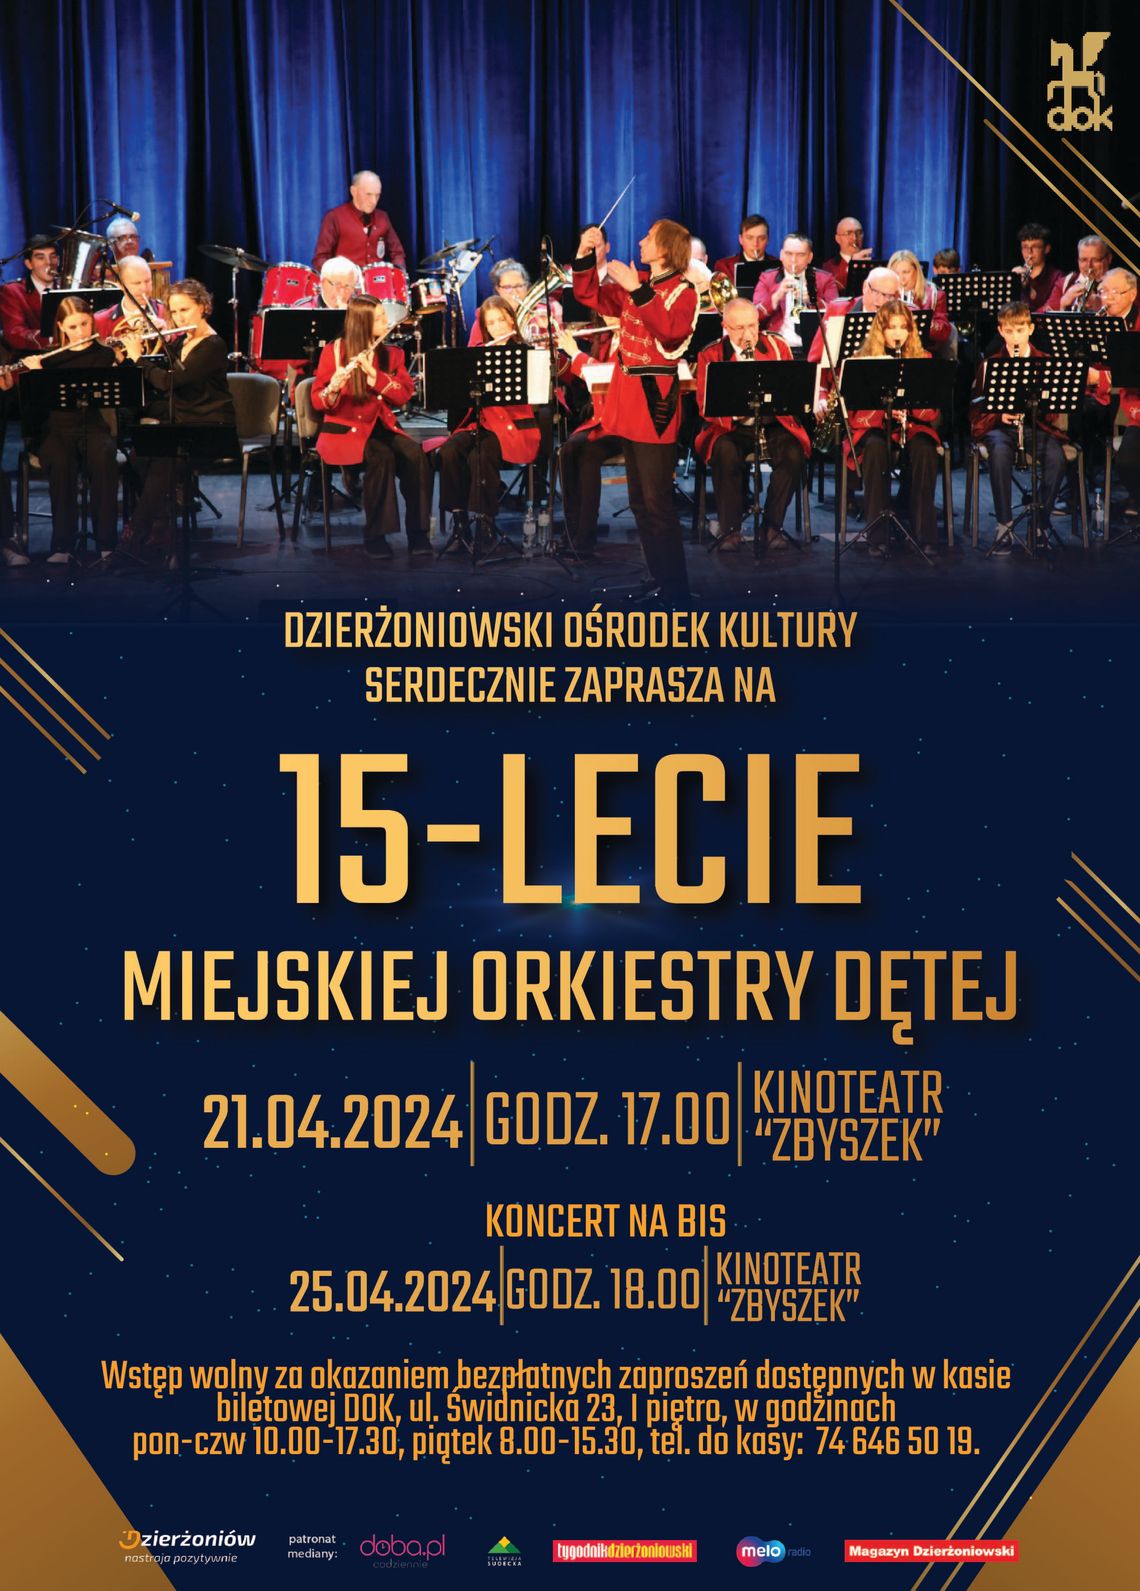 Dzierżoniowski Ośrodek Kultury zaprasza na Jubileusz 15-lecia Miejskiej Orkiestry Dętej